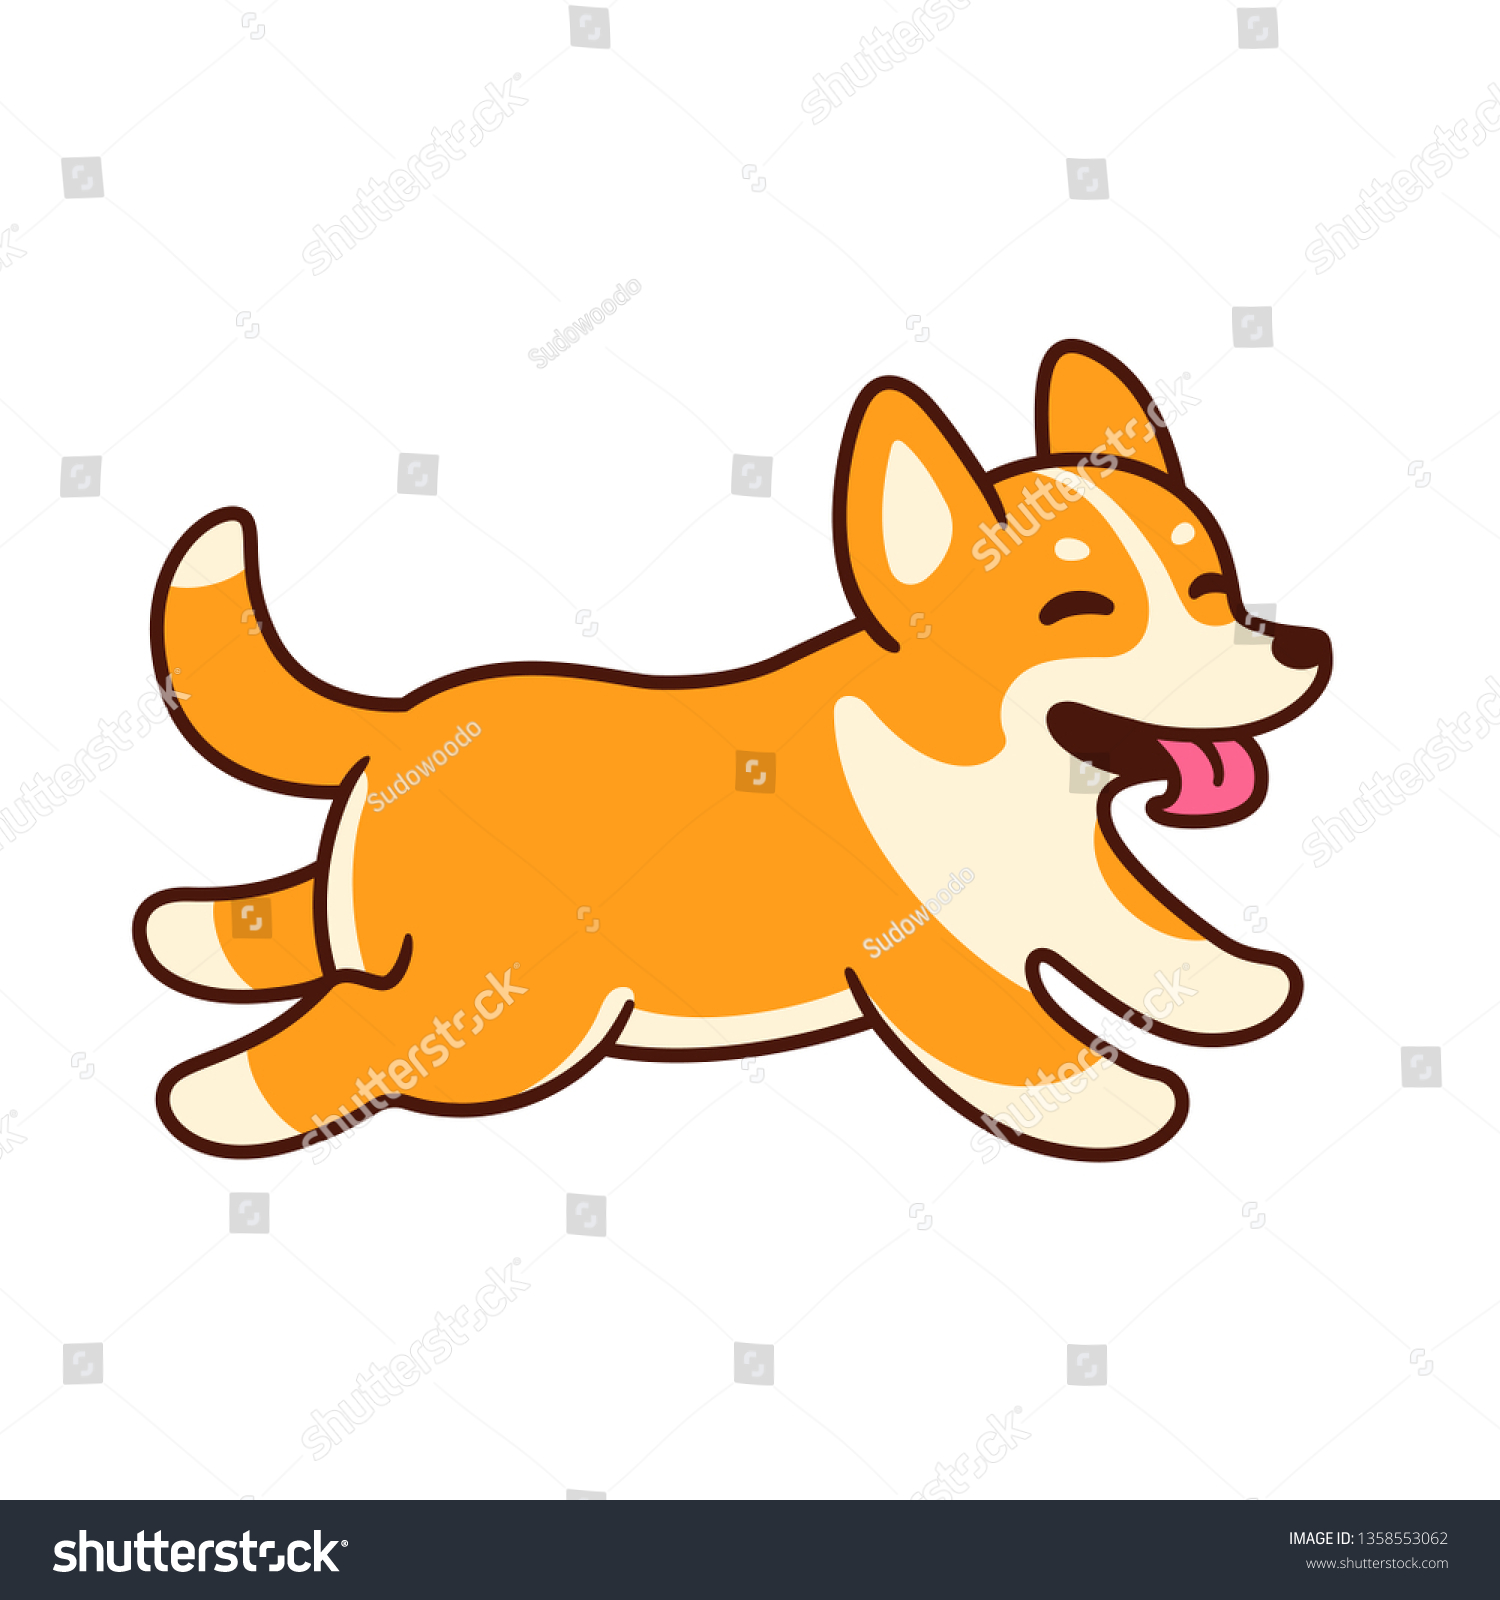 舌を出して走るおかしな漫画のコルギ かわいい幸せな犬のベクターイラスト のベクター画像素材 ロイヤリティフリー